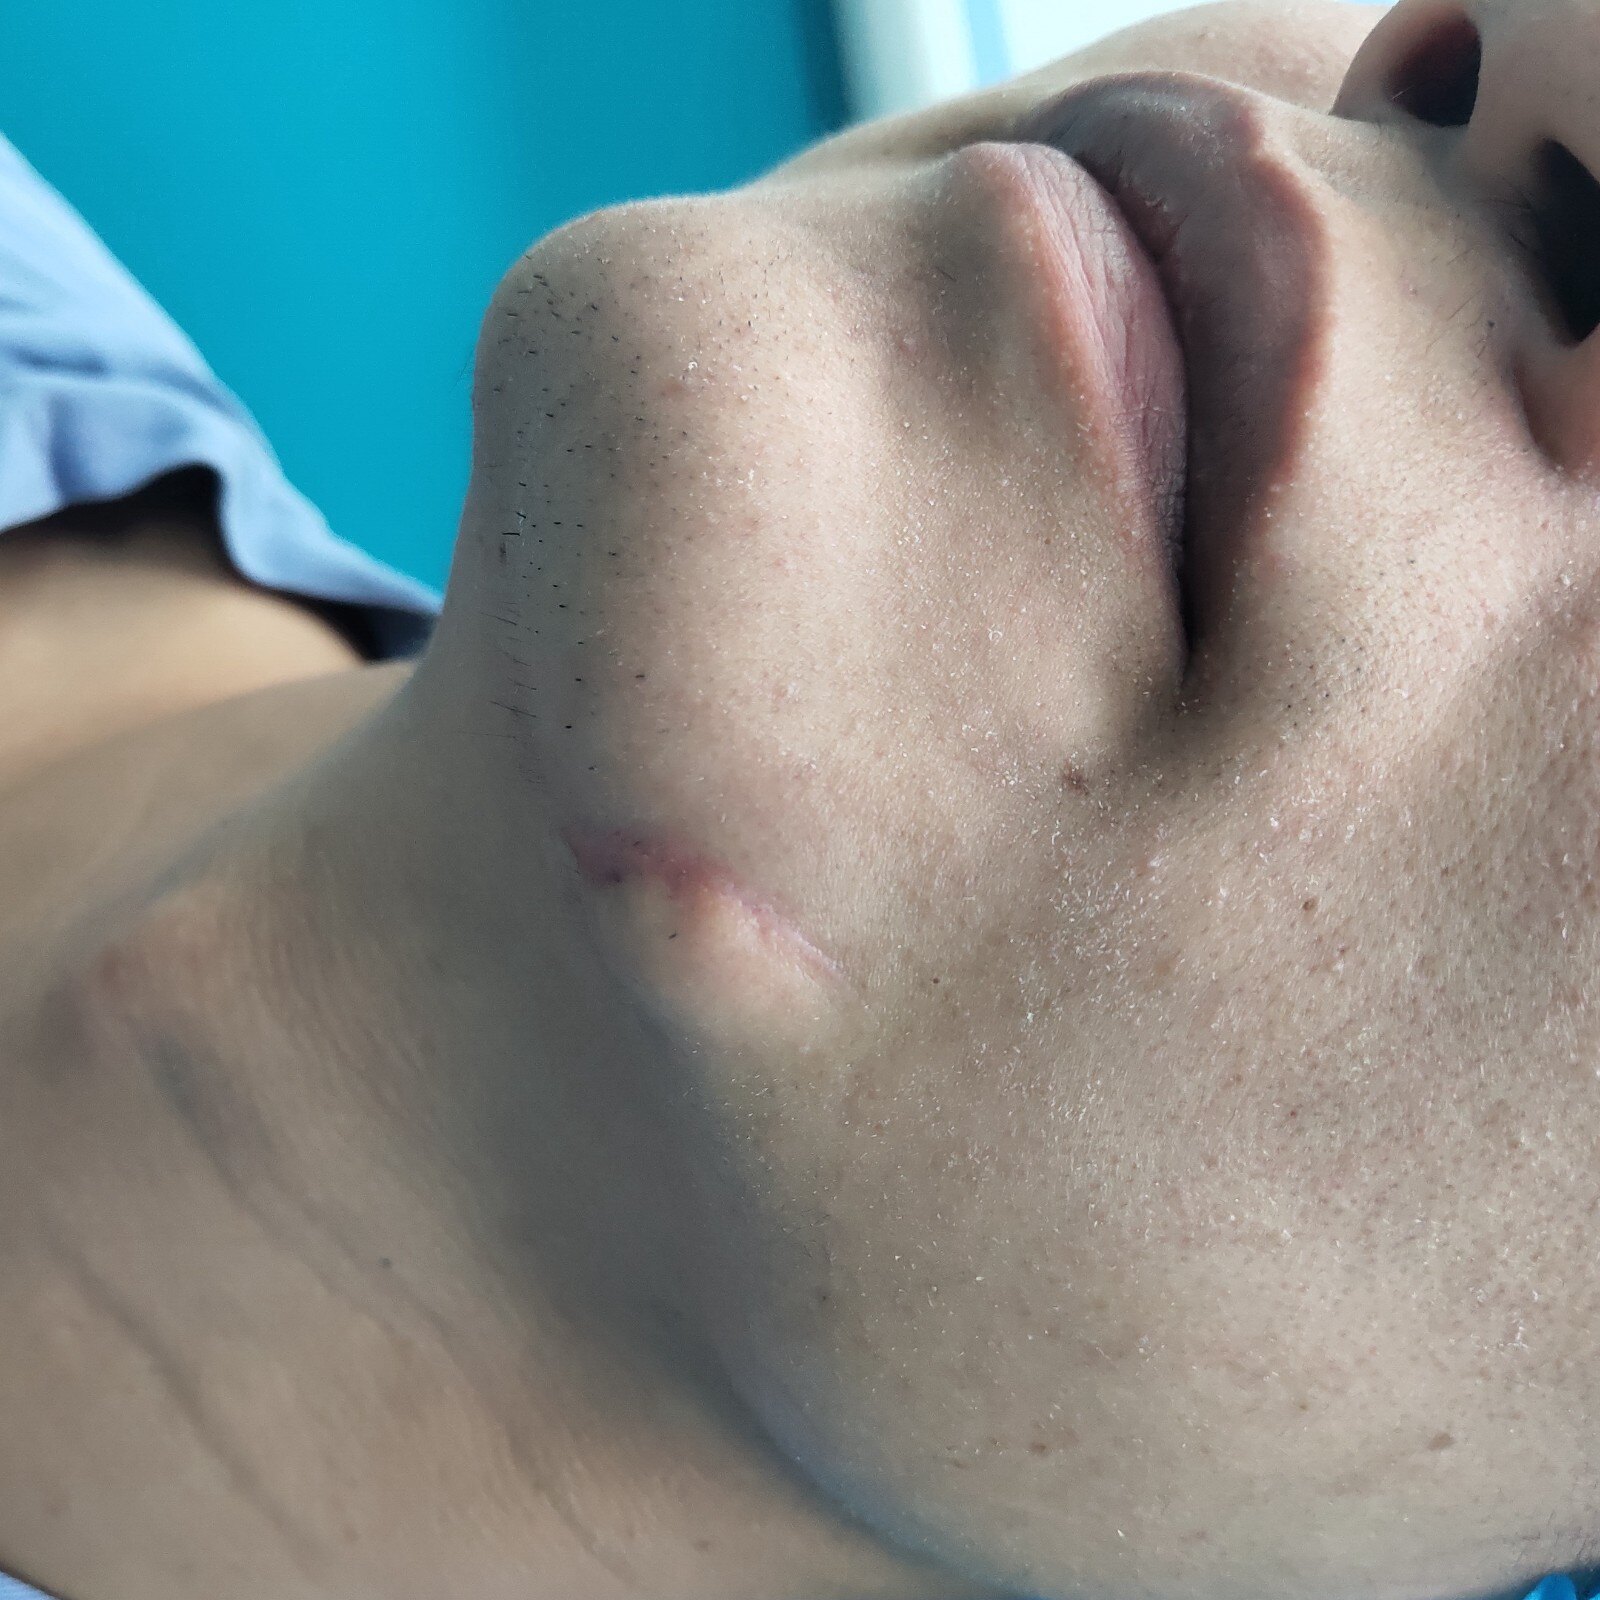 疤痕案例十四:下巴刀伤缝合后疤痕增生案例解析 